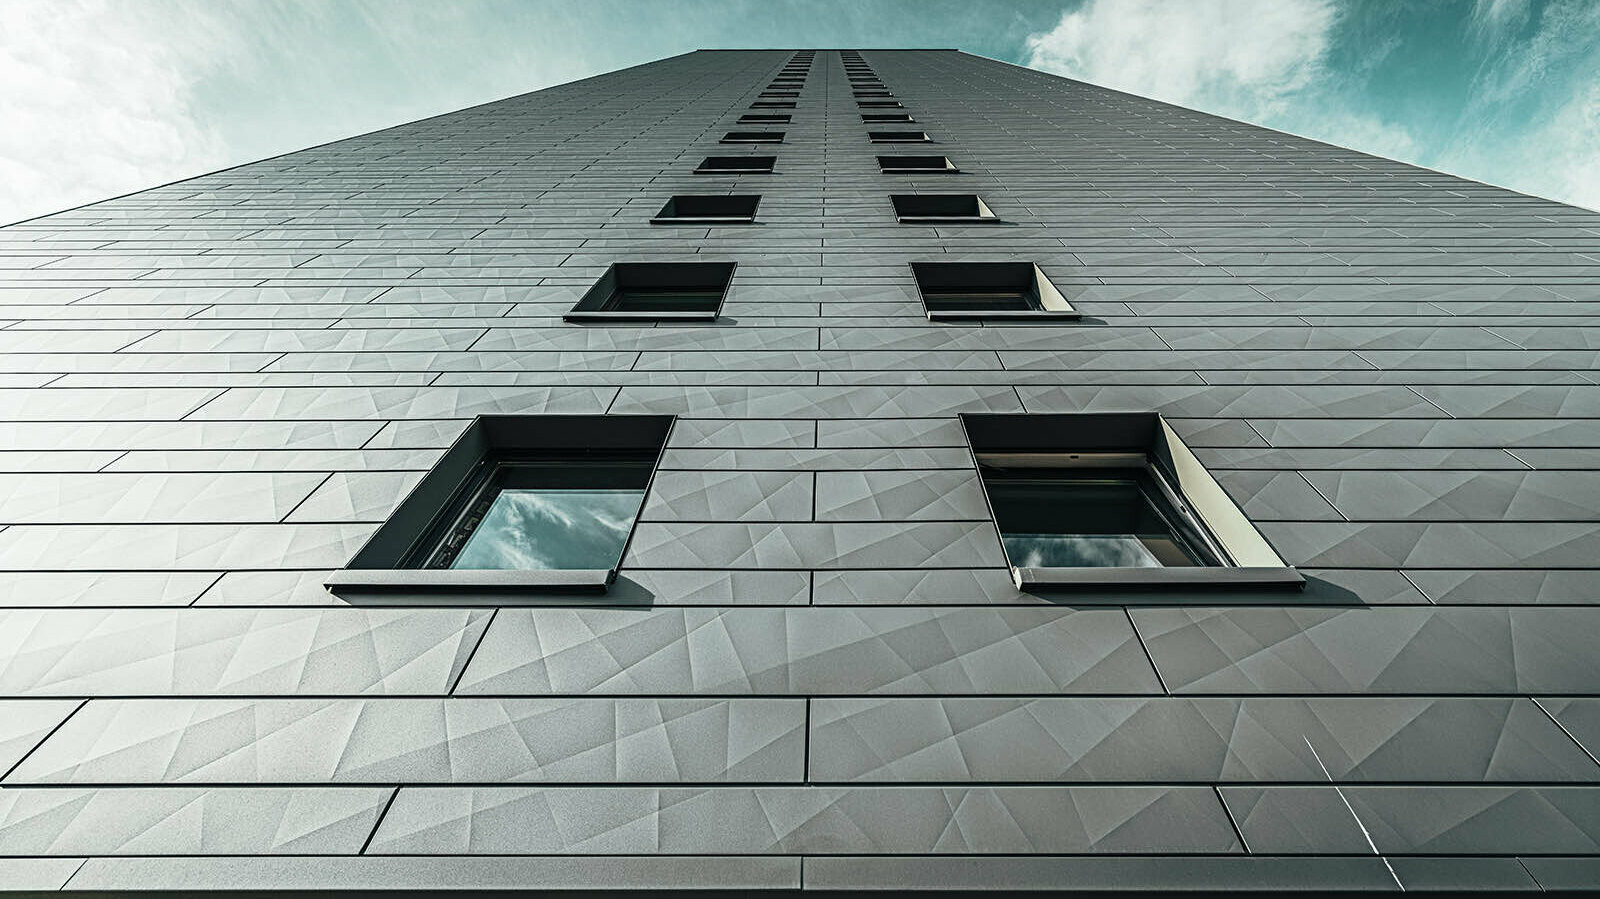 PREFA Fassadensidings am Hochhaus Erfstadt mit schönen Kontrast zum blauen Himmel im Hintergrund des Bildes.